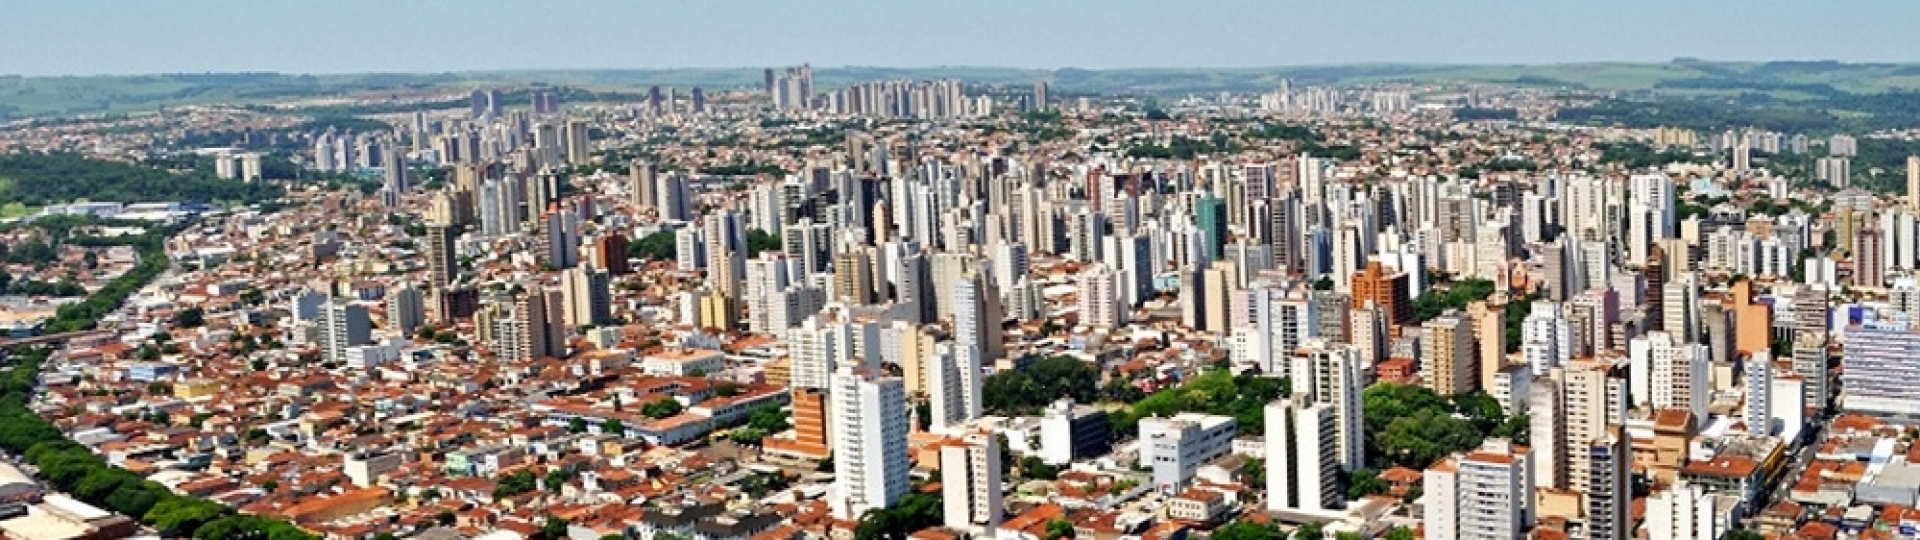 Ribeirão Preto 150 anos: muito para comemorar